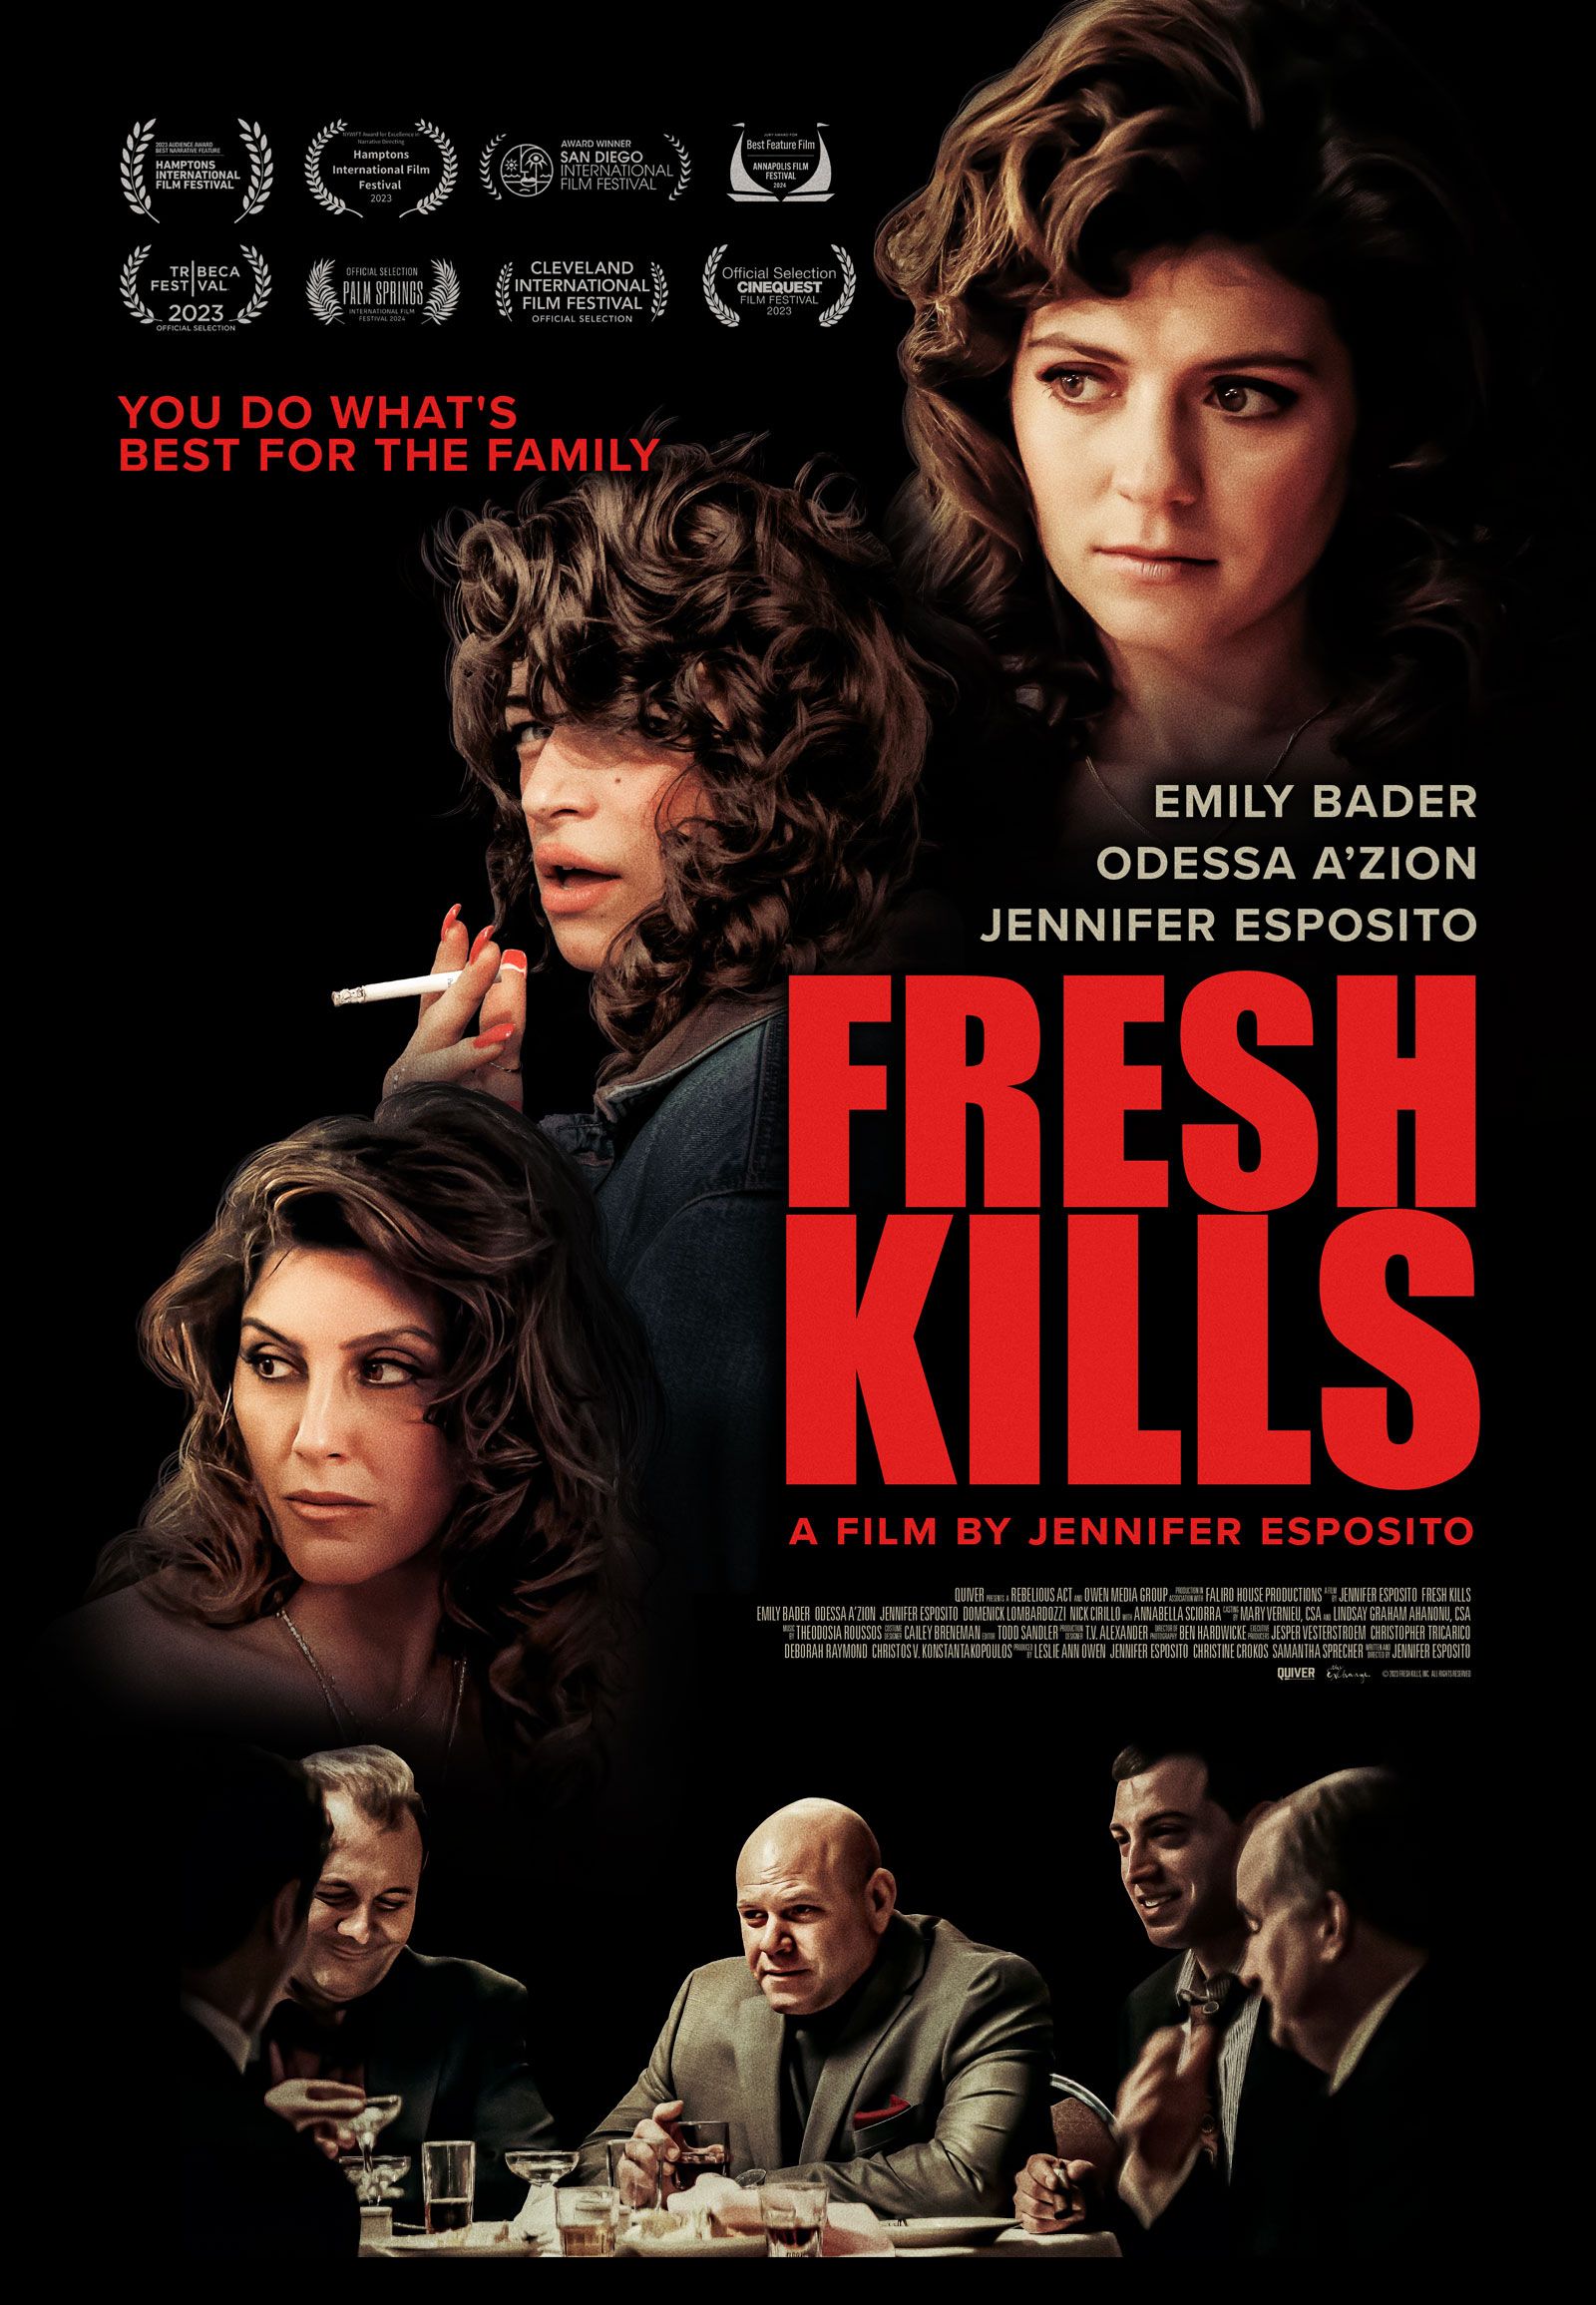 The poster for Jennifer Esposito's Fresh Kills 